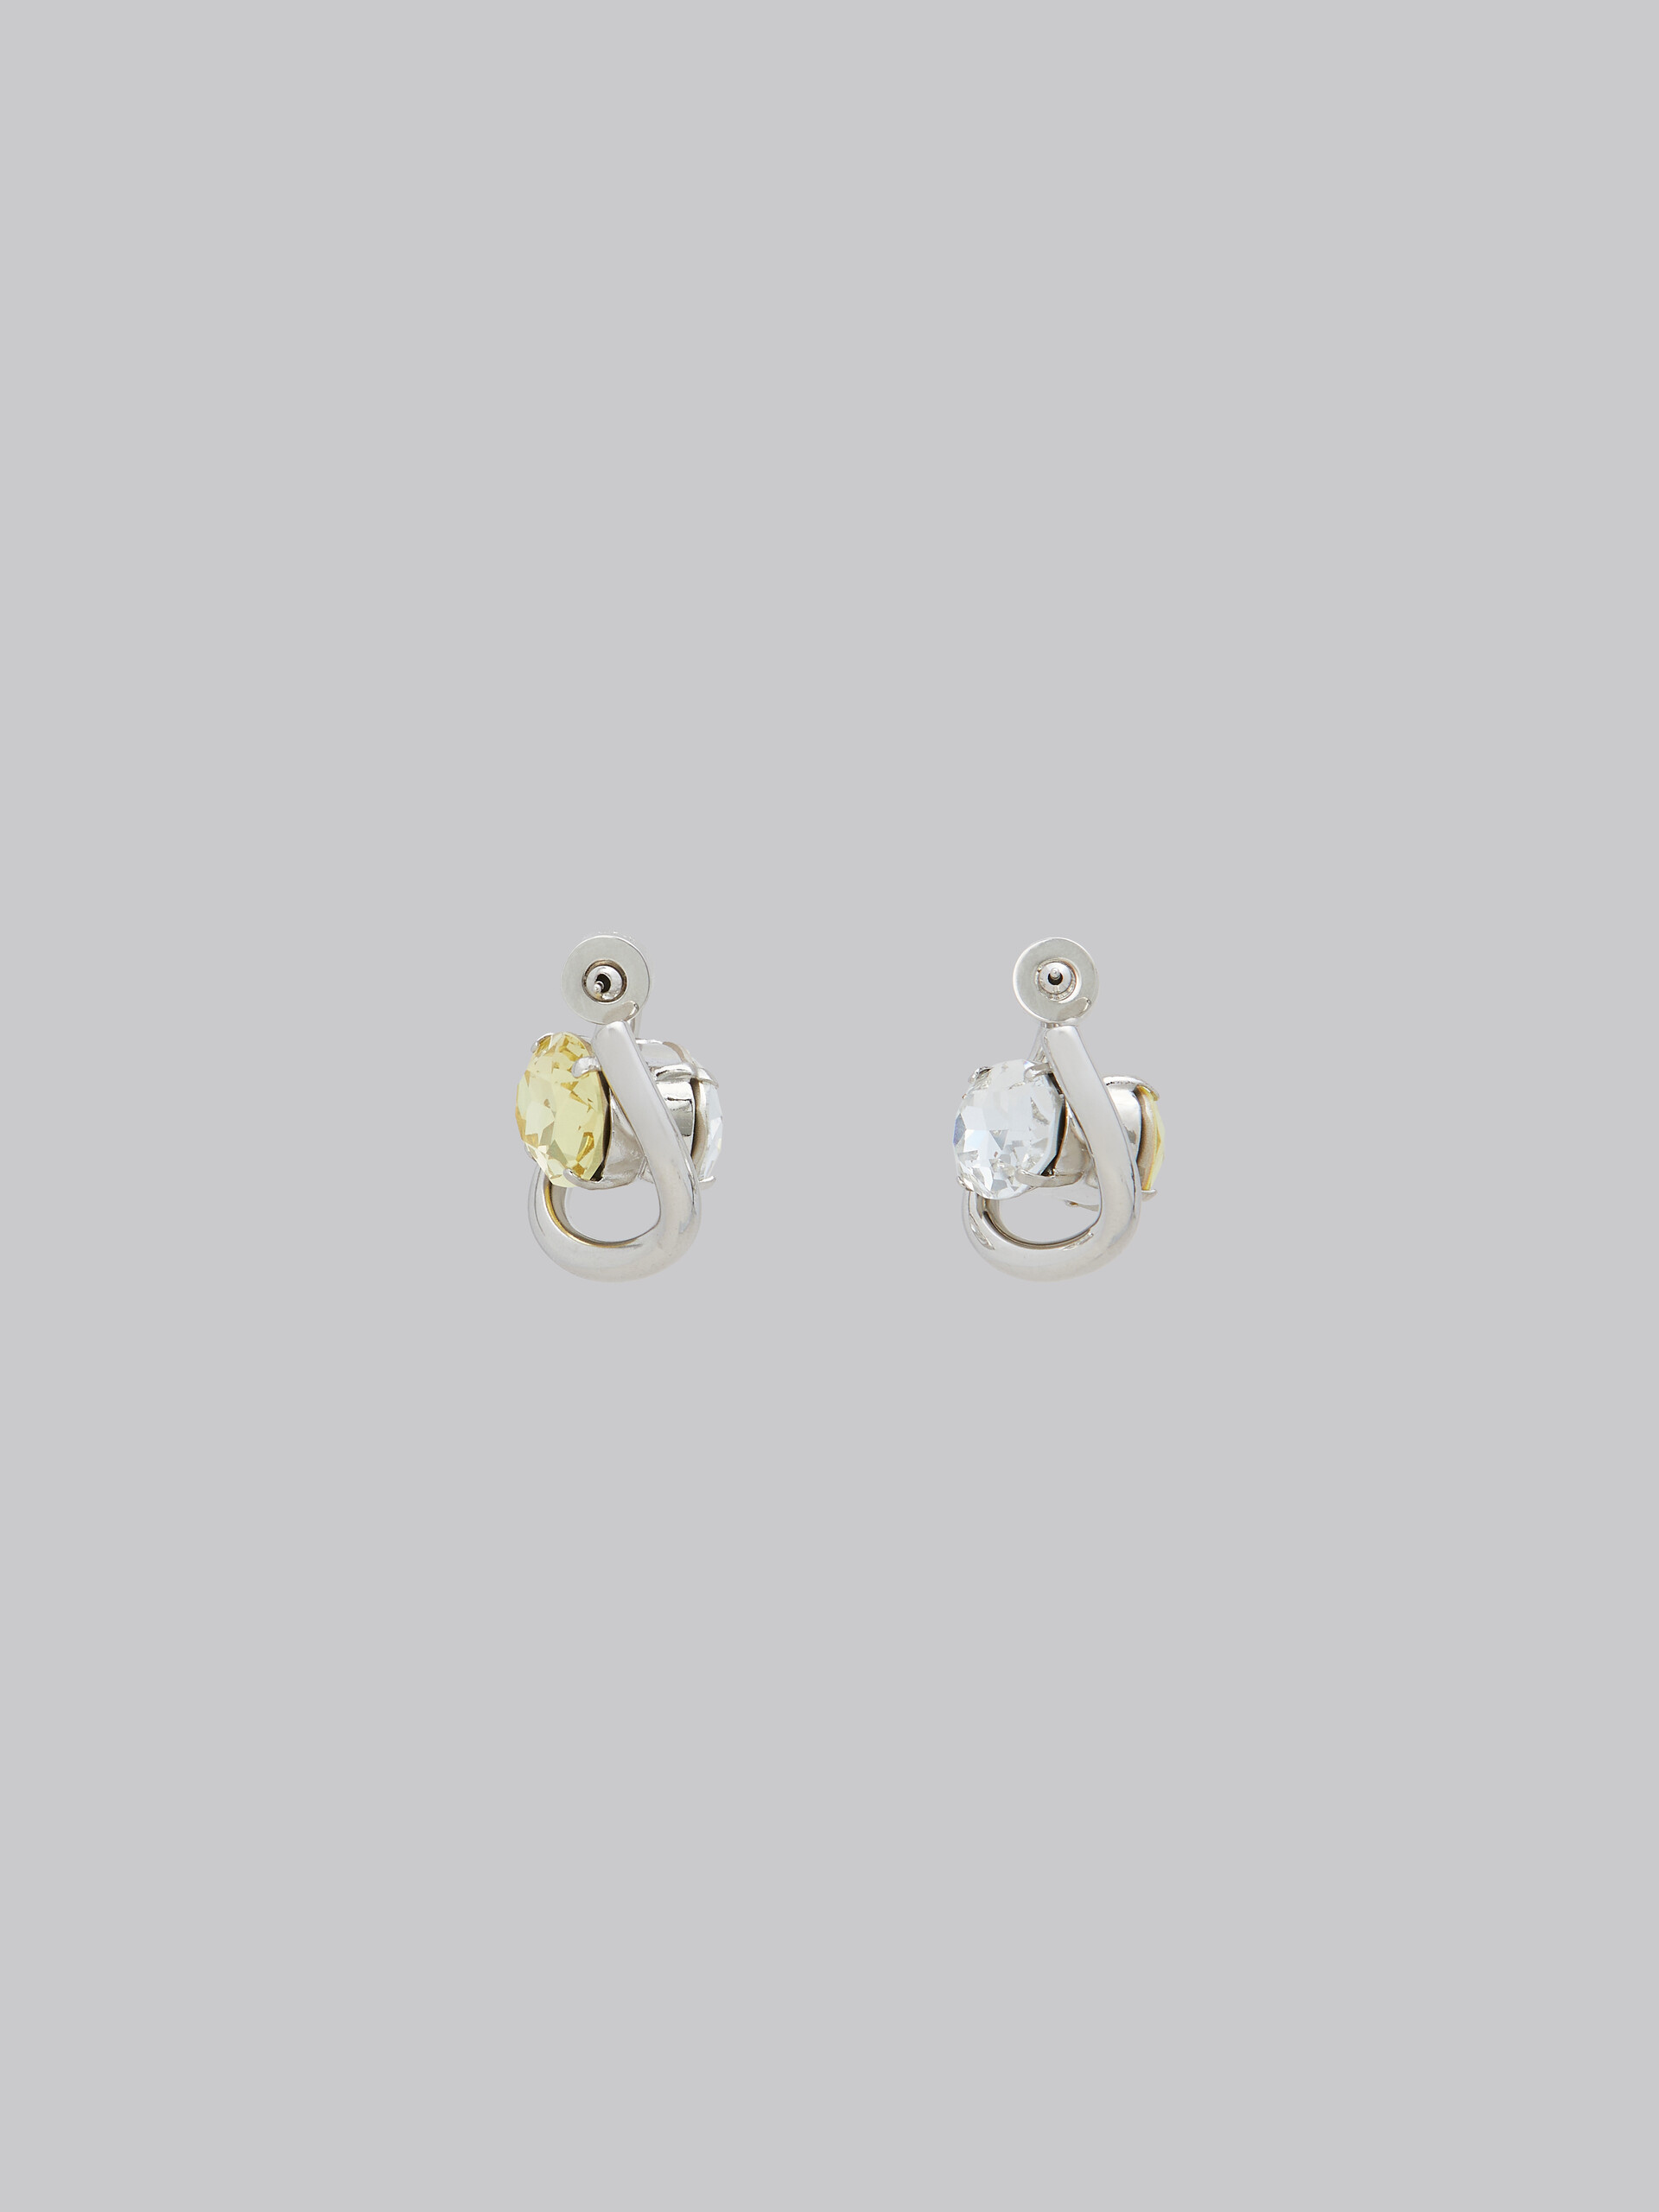 Boucles d’oreilles créoles torsadées avec strass transparents et jaunes - Boucles d’oreilles - Image 3